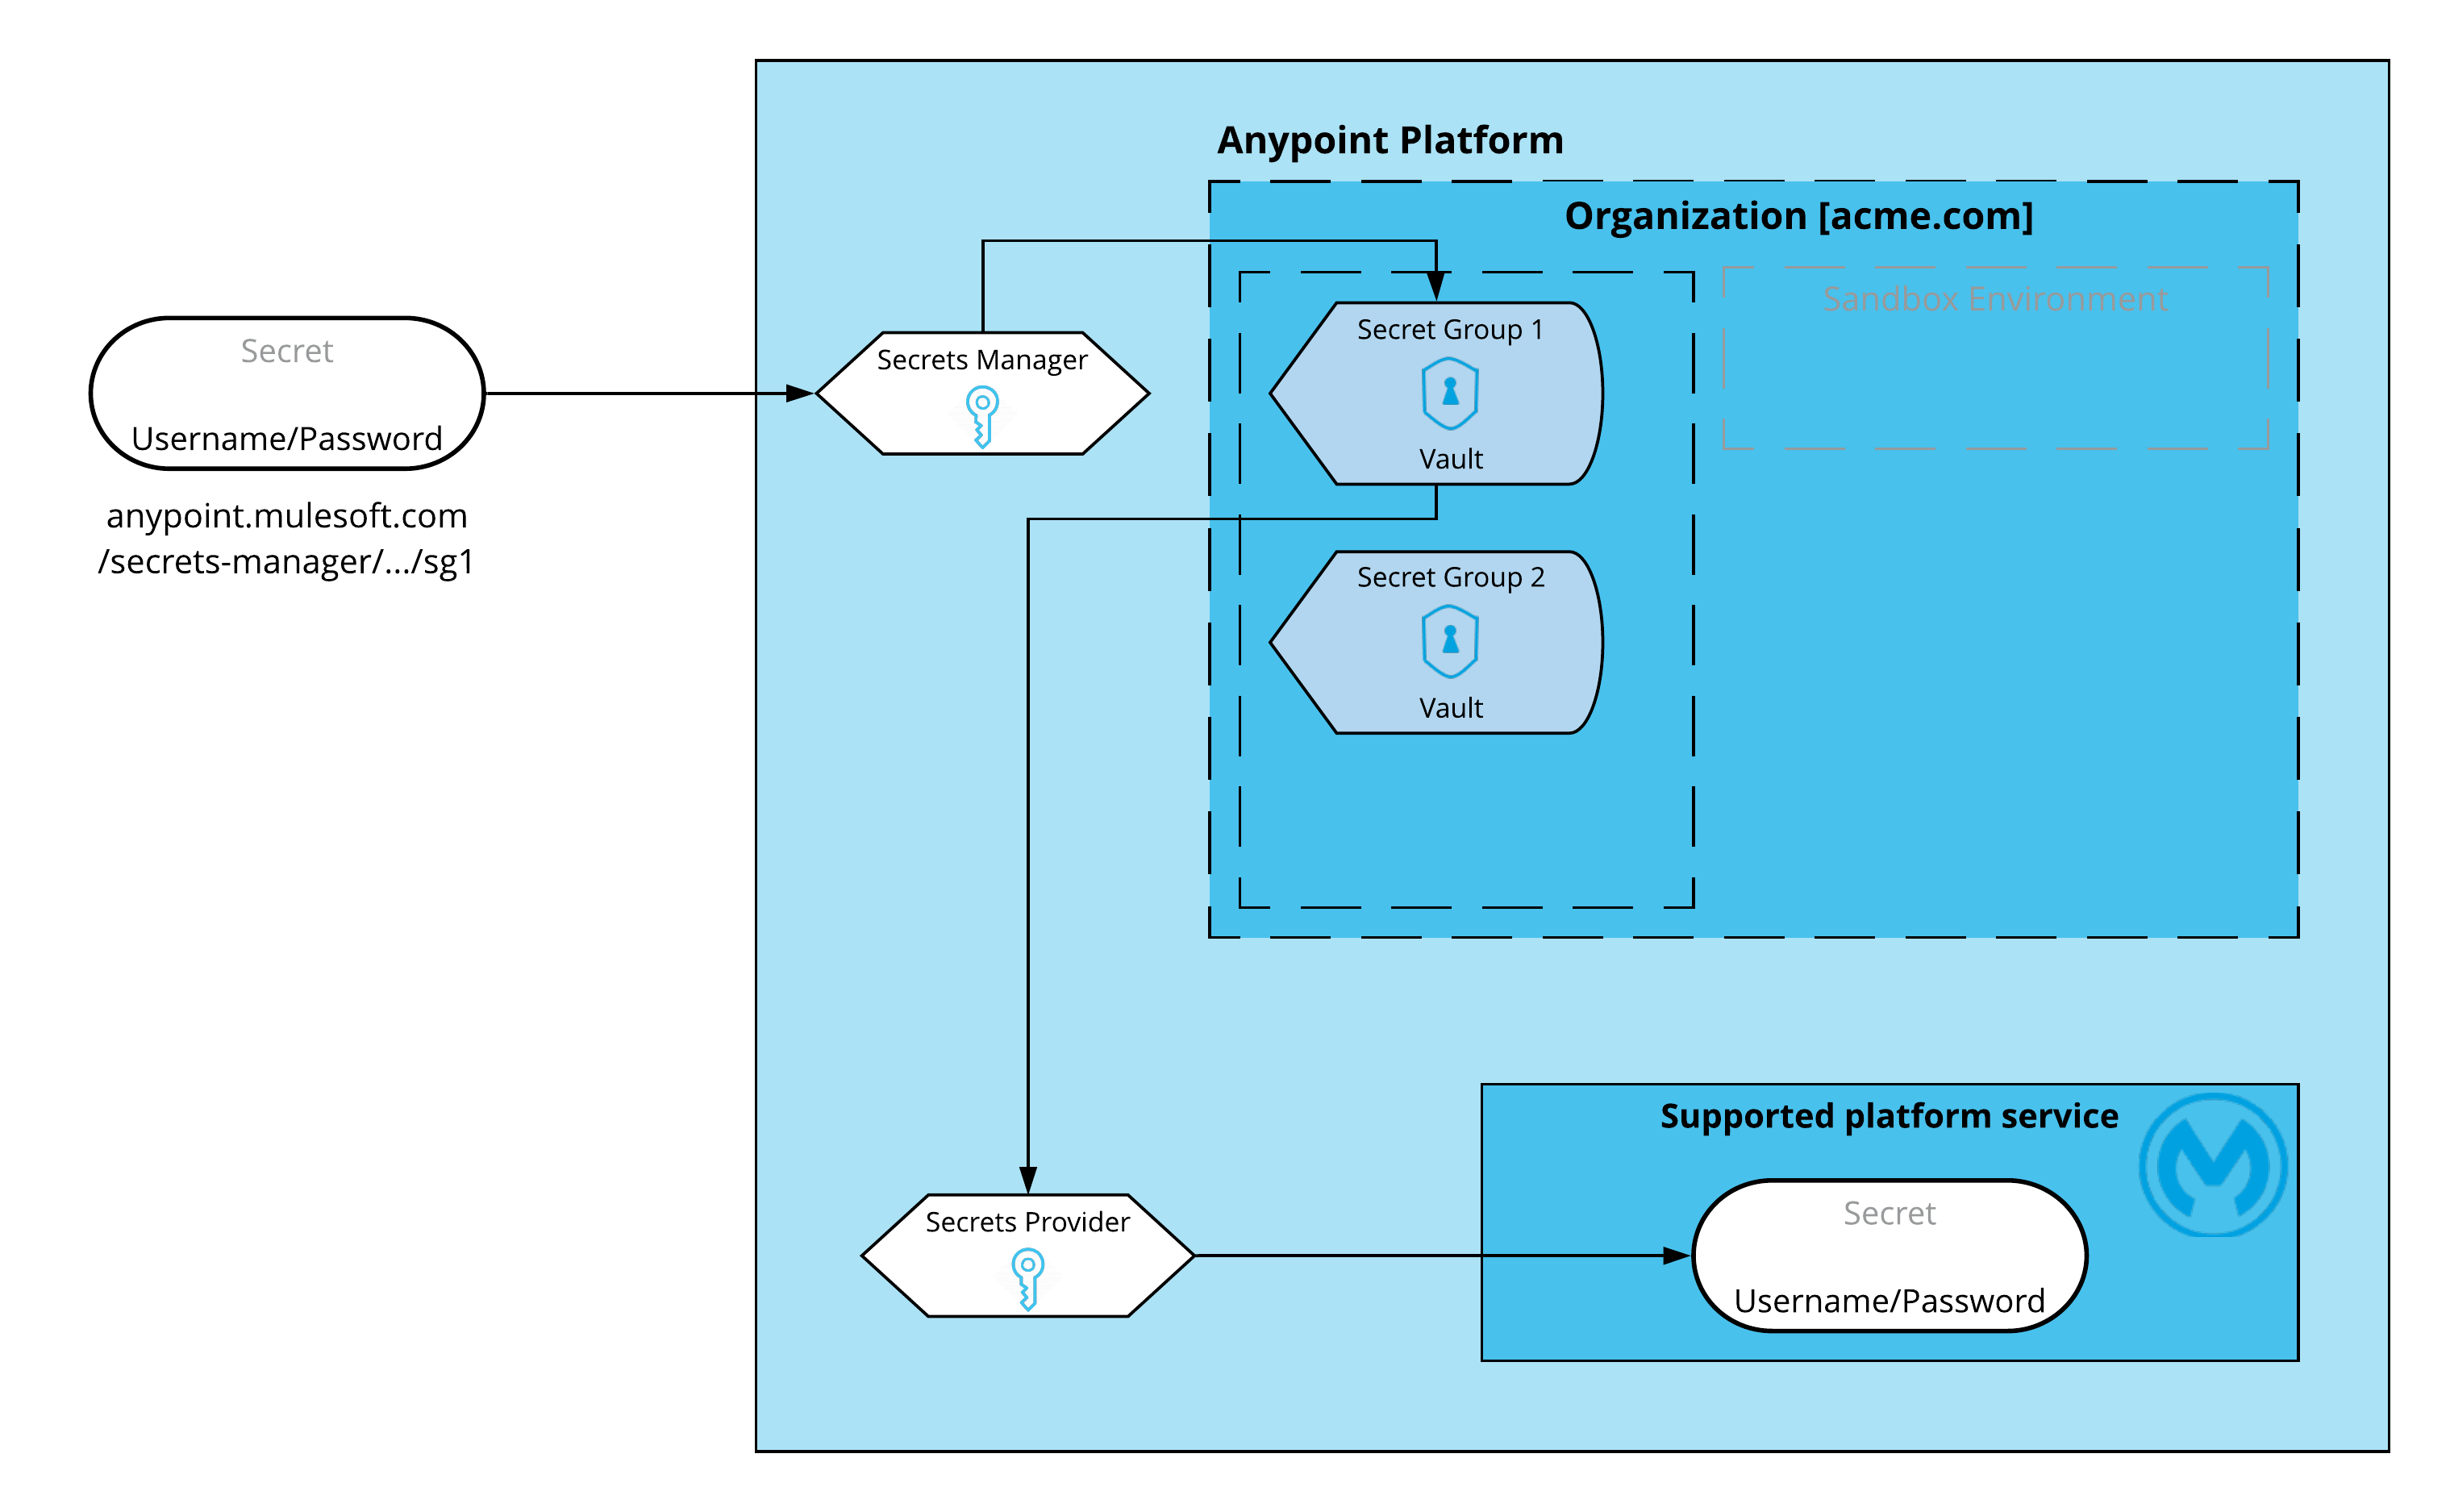 シークレットマネージャーがシークレットプロバイダーサービスや Anypoint Platform サービスとやり取りする様子を示した図。